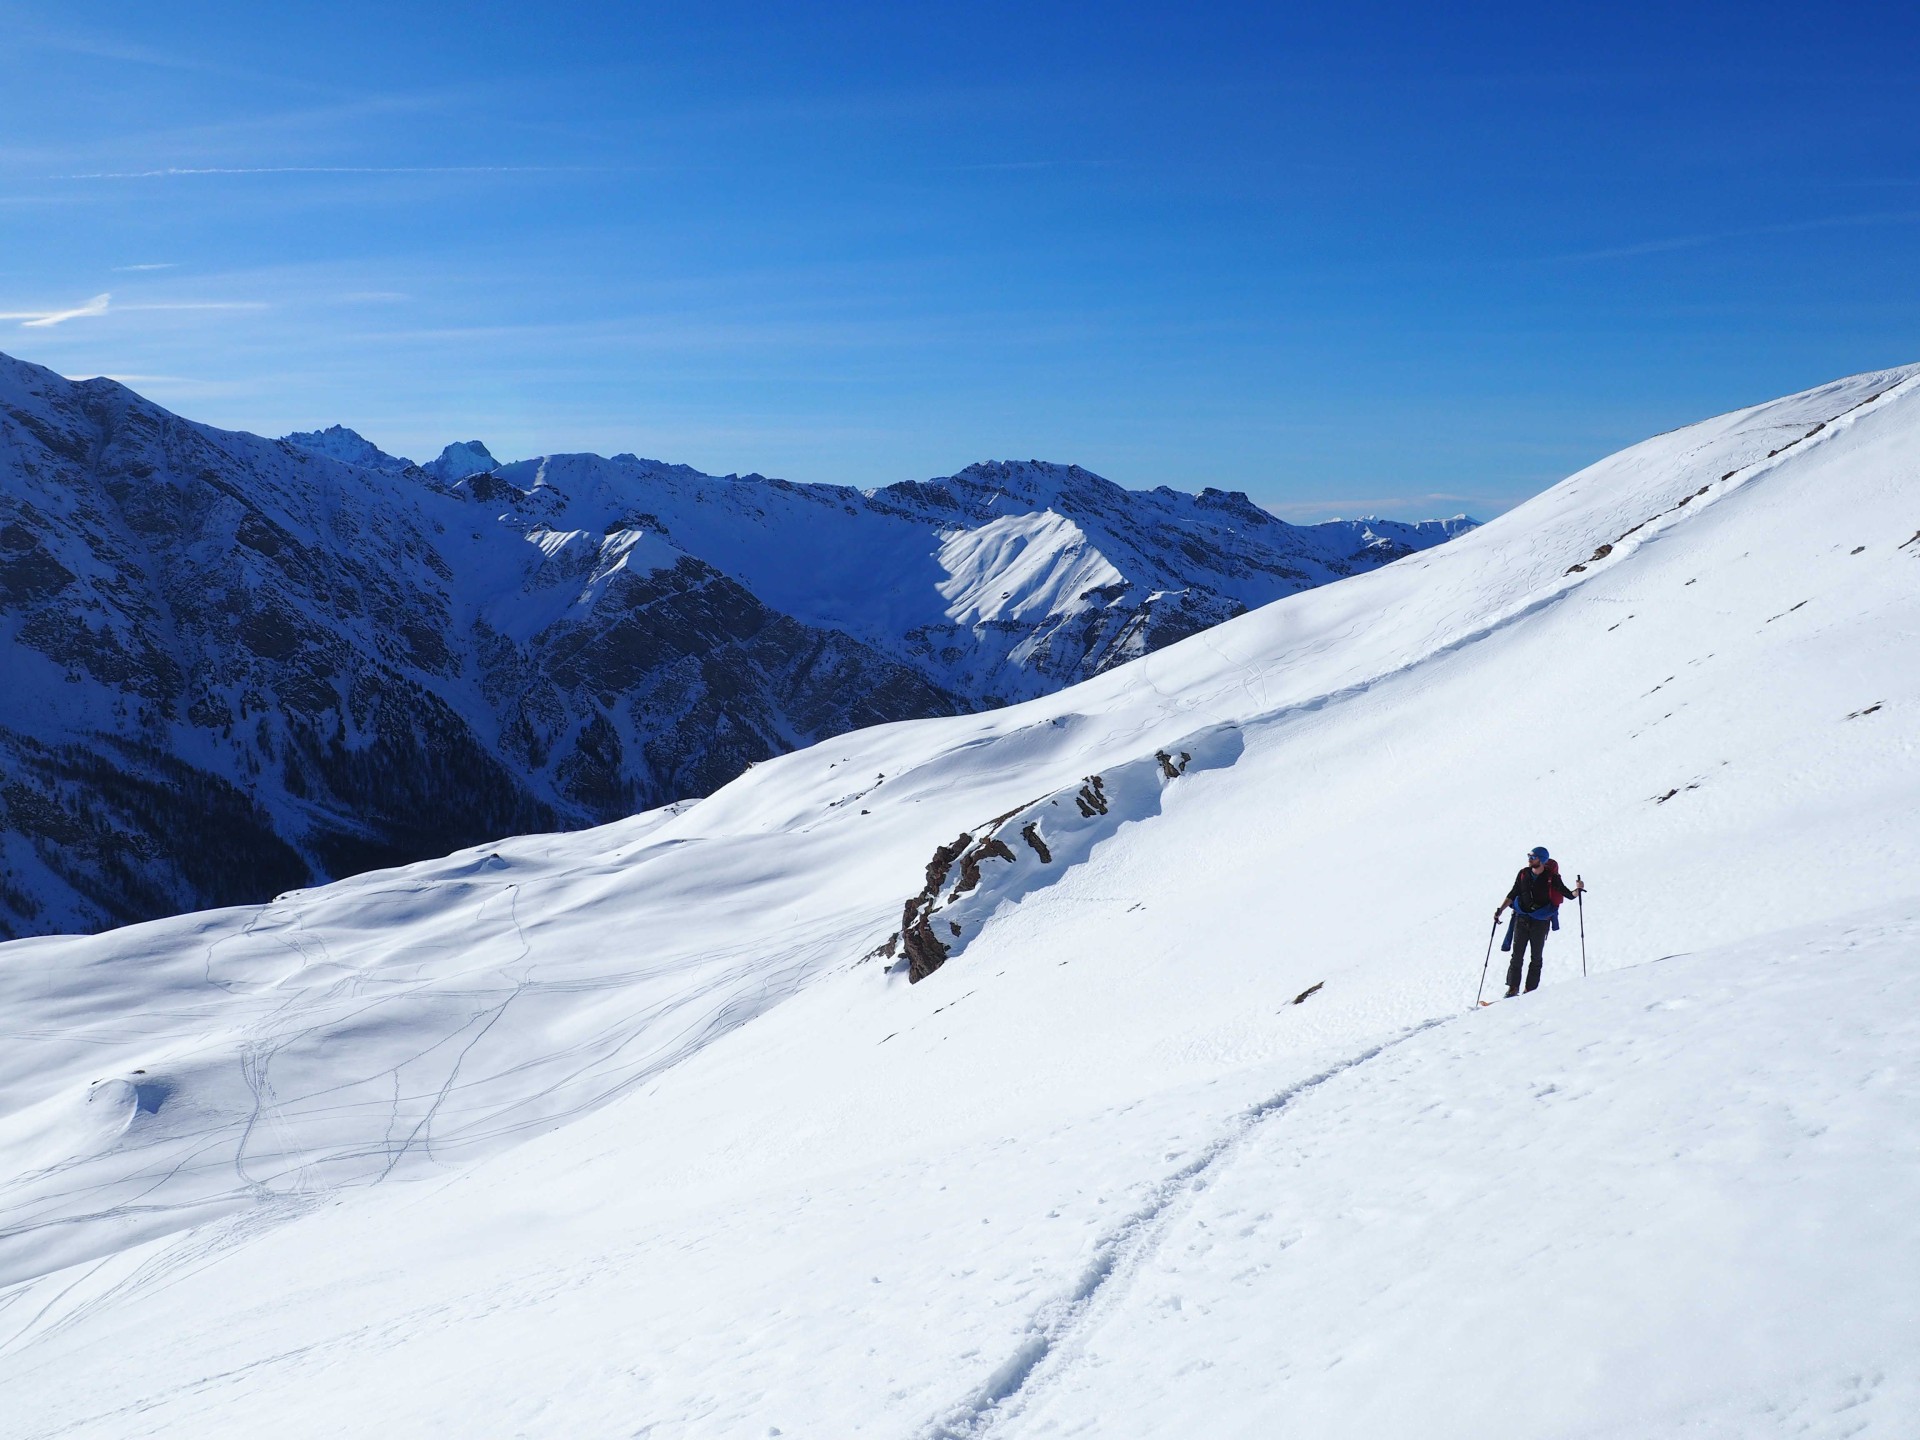 Location de raquette à neige à Guillestre au pied des Hautes Alpes